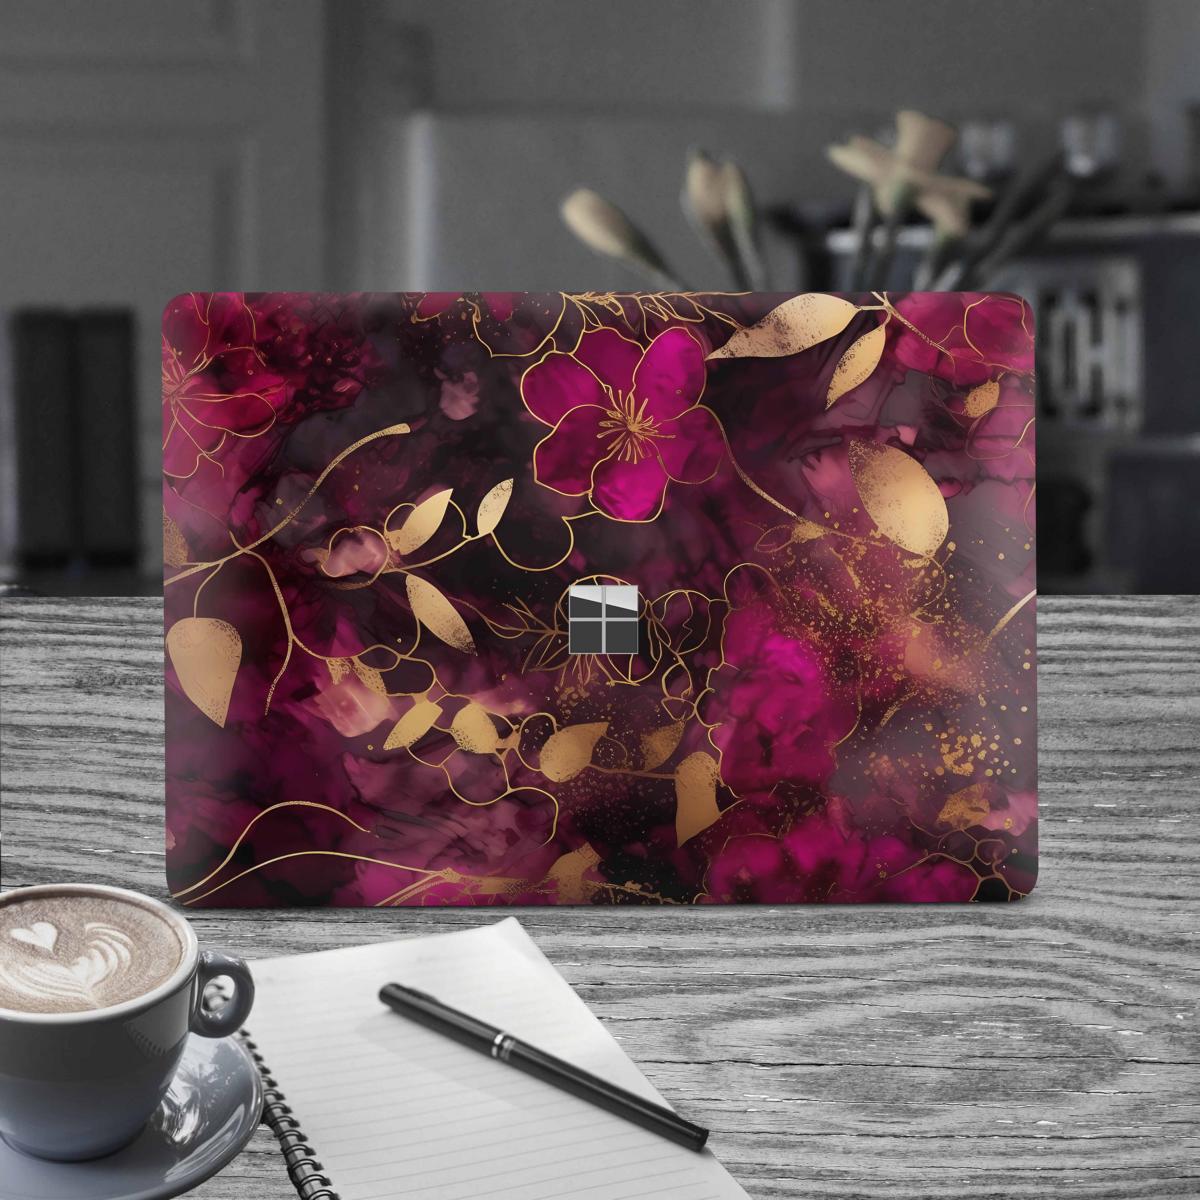 Microsoft Surface Book 2 Skin 15" Premium Vinylfolie Kratzerschutz Design Flower Dark Elektronik-Sticker & -Aufkleber Skins4u   